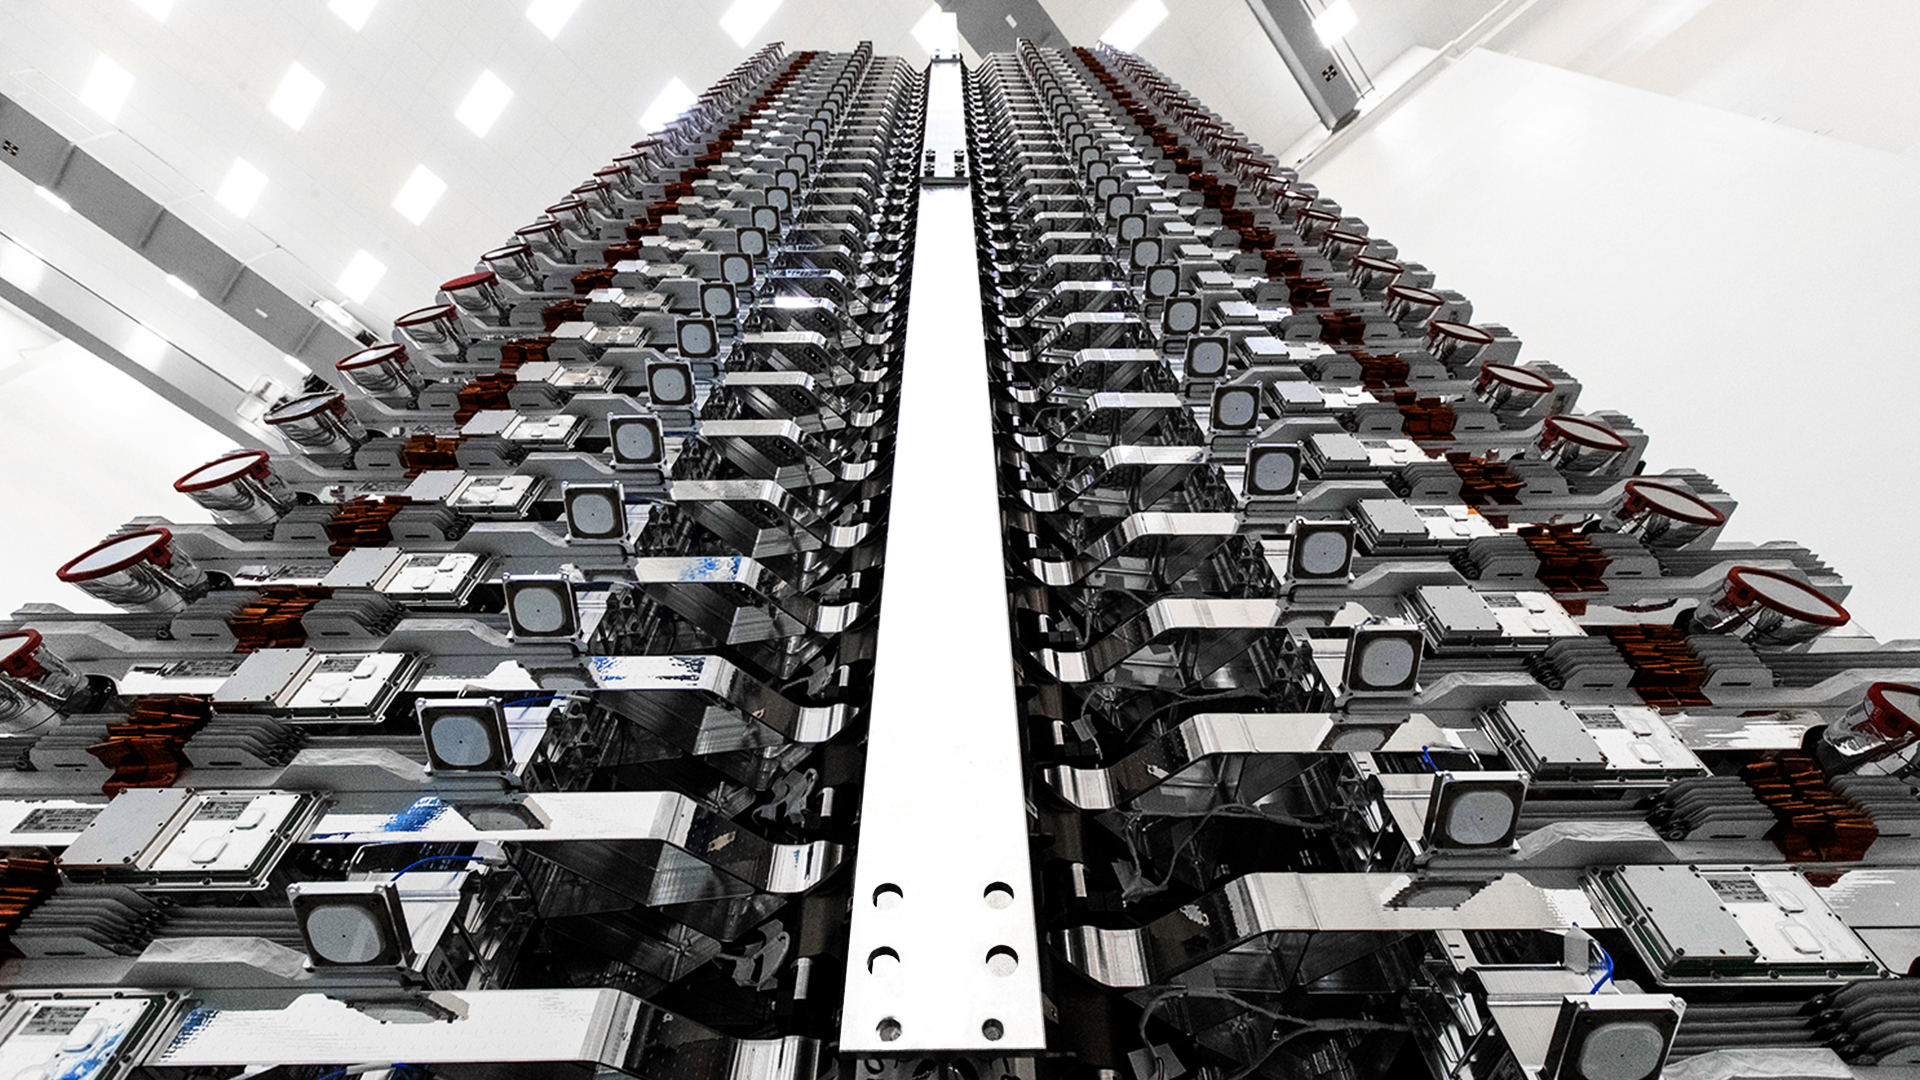 60 satelitów Starlink przygotowanych do wyniesienia na orbitę (Źródło: SpaceX)